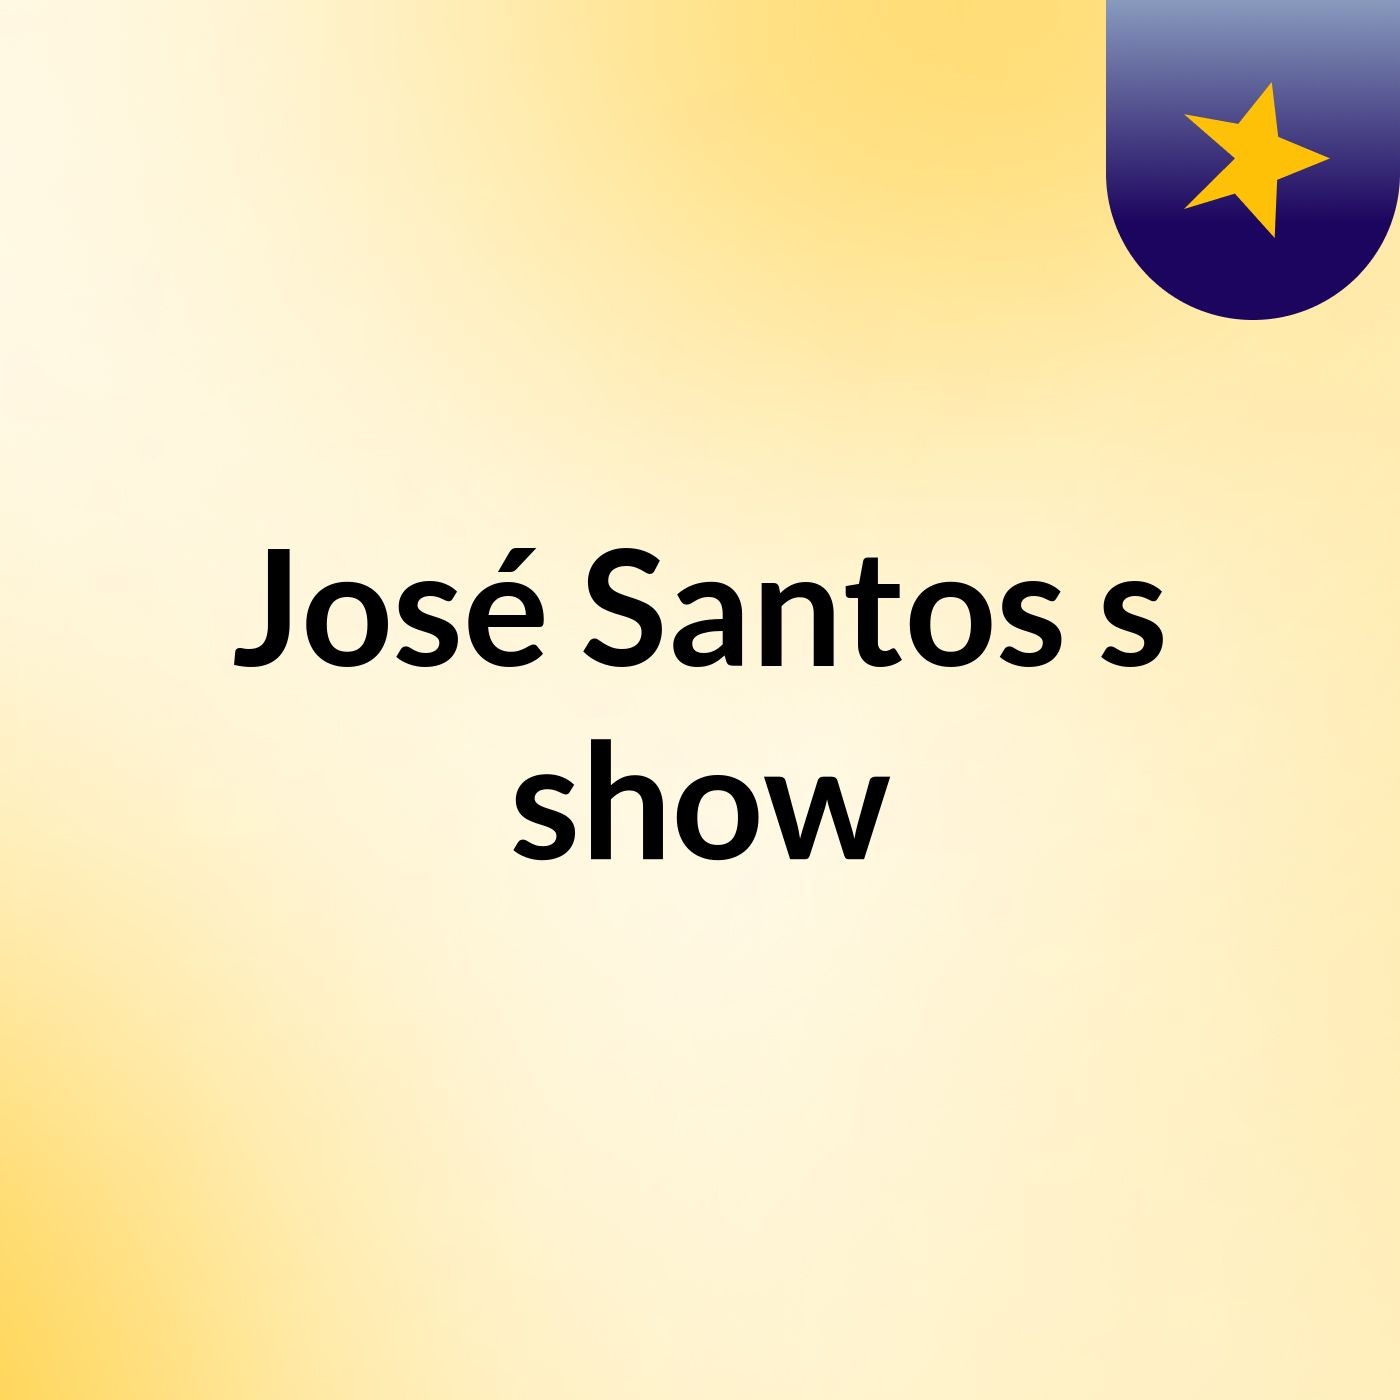 José Santos's show